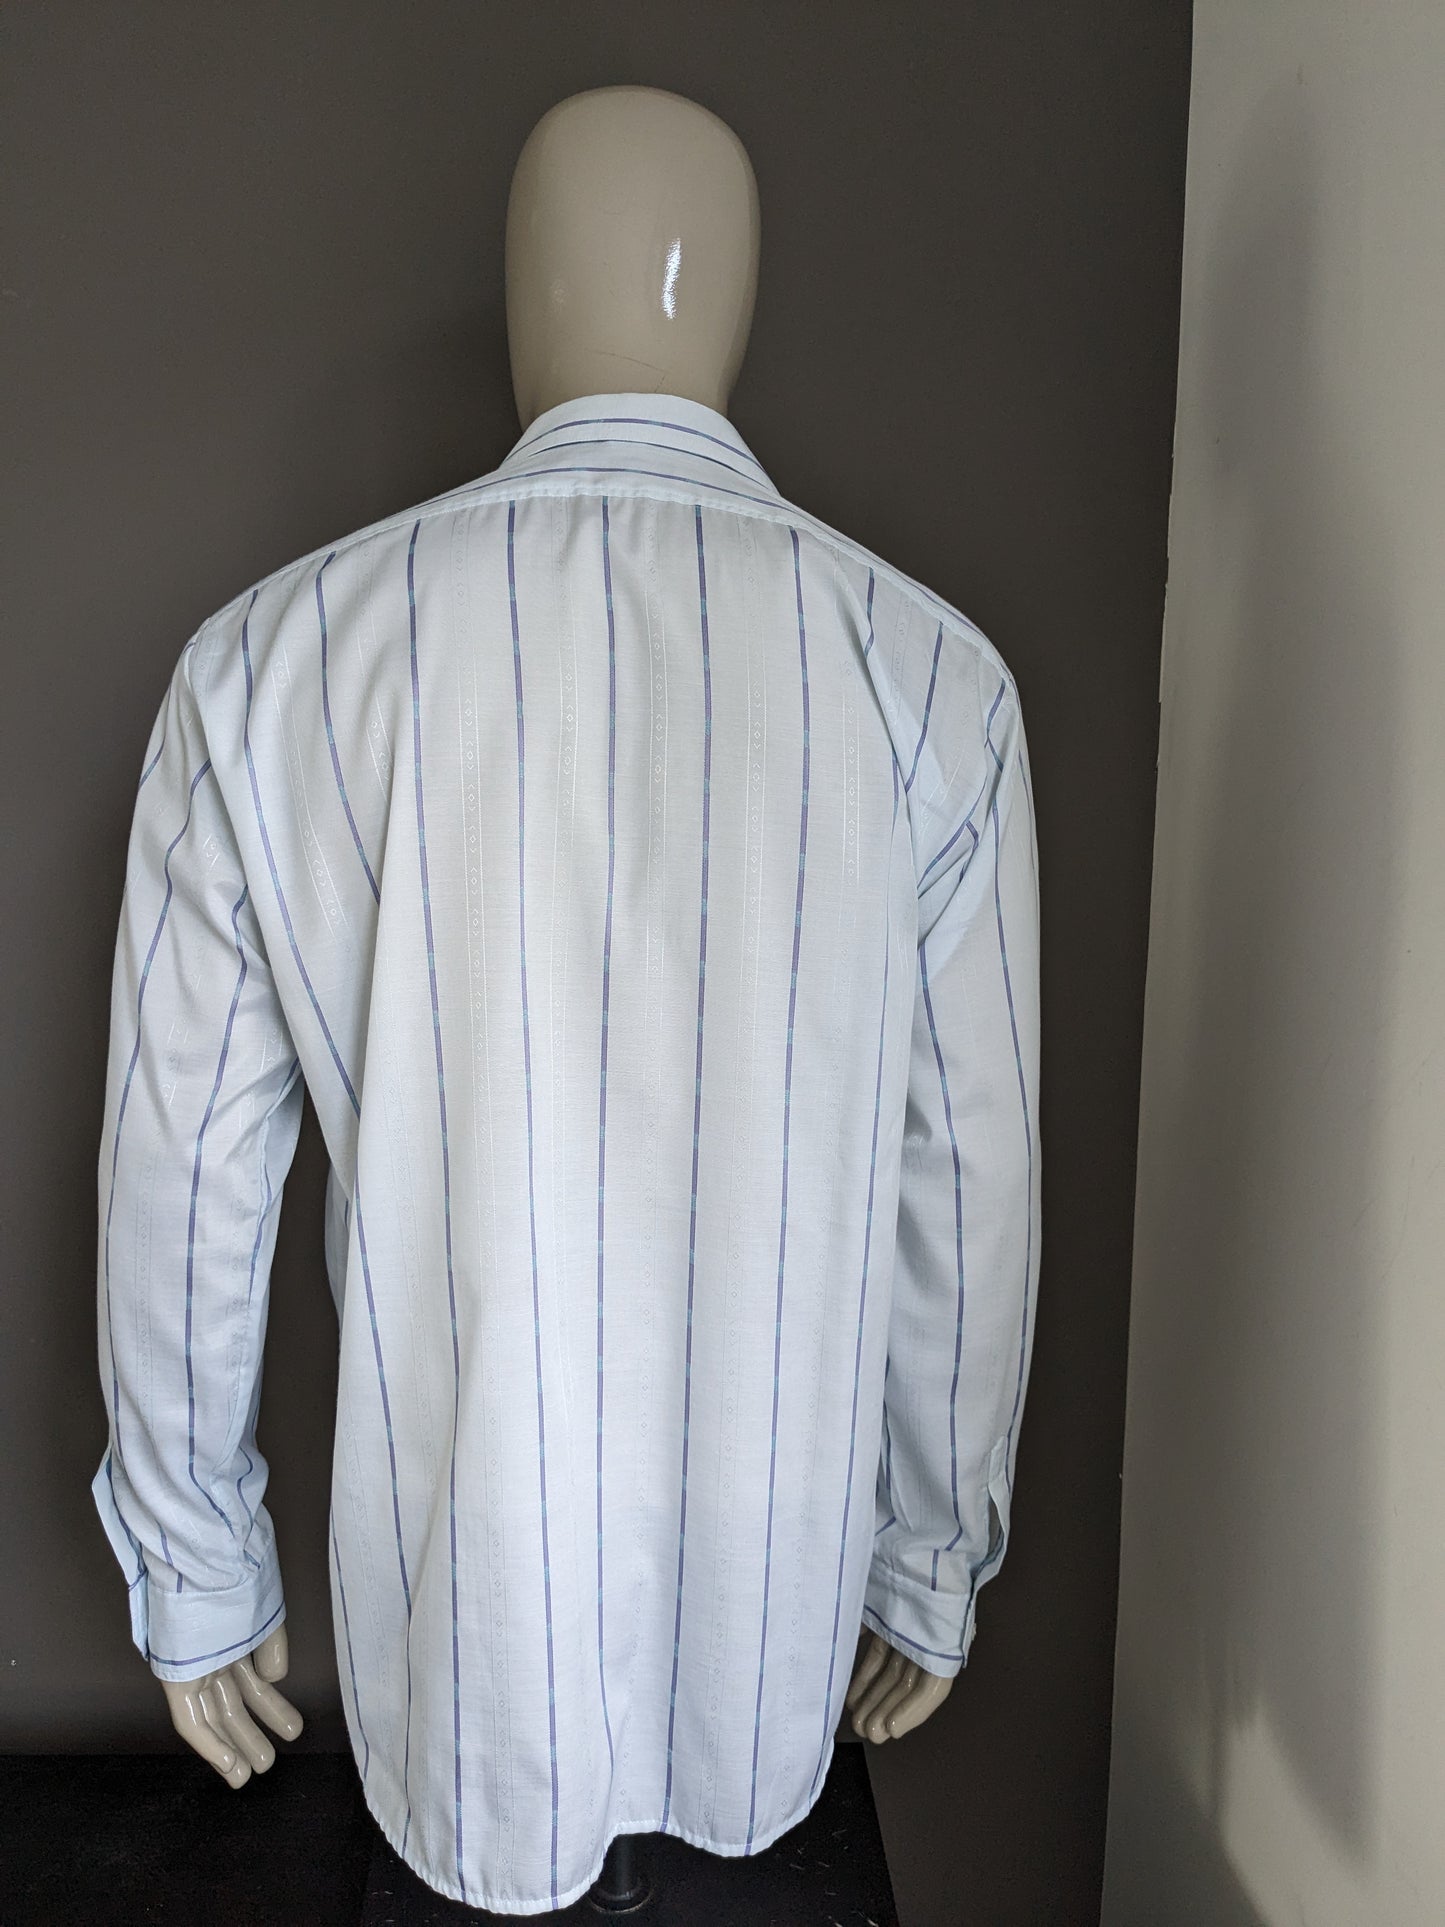 Vintage Jacqueline de Tancot 70's overhemd met puntkraag. Licht Blauw motief. Maat XL / XXL-2XL.